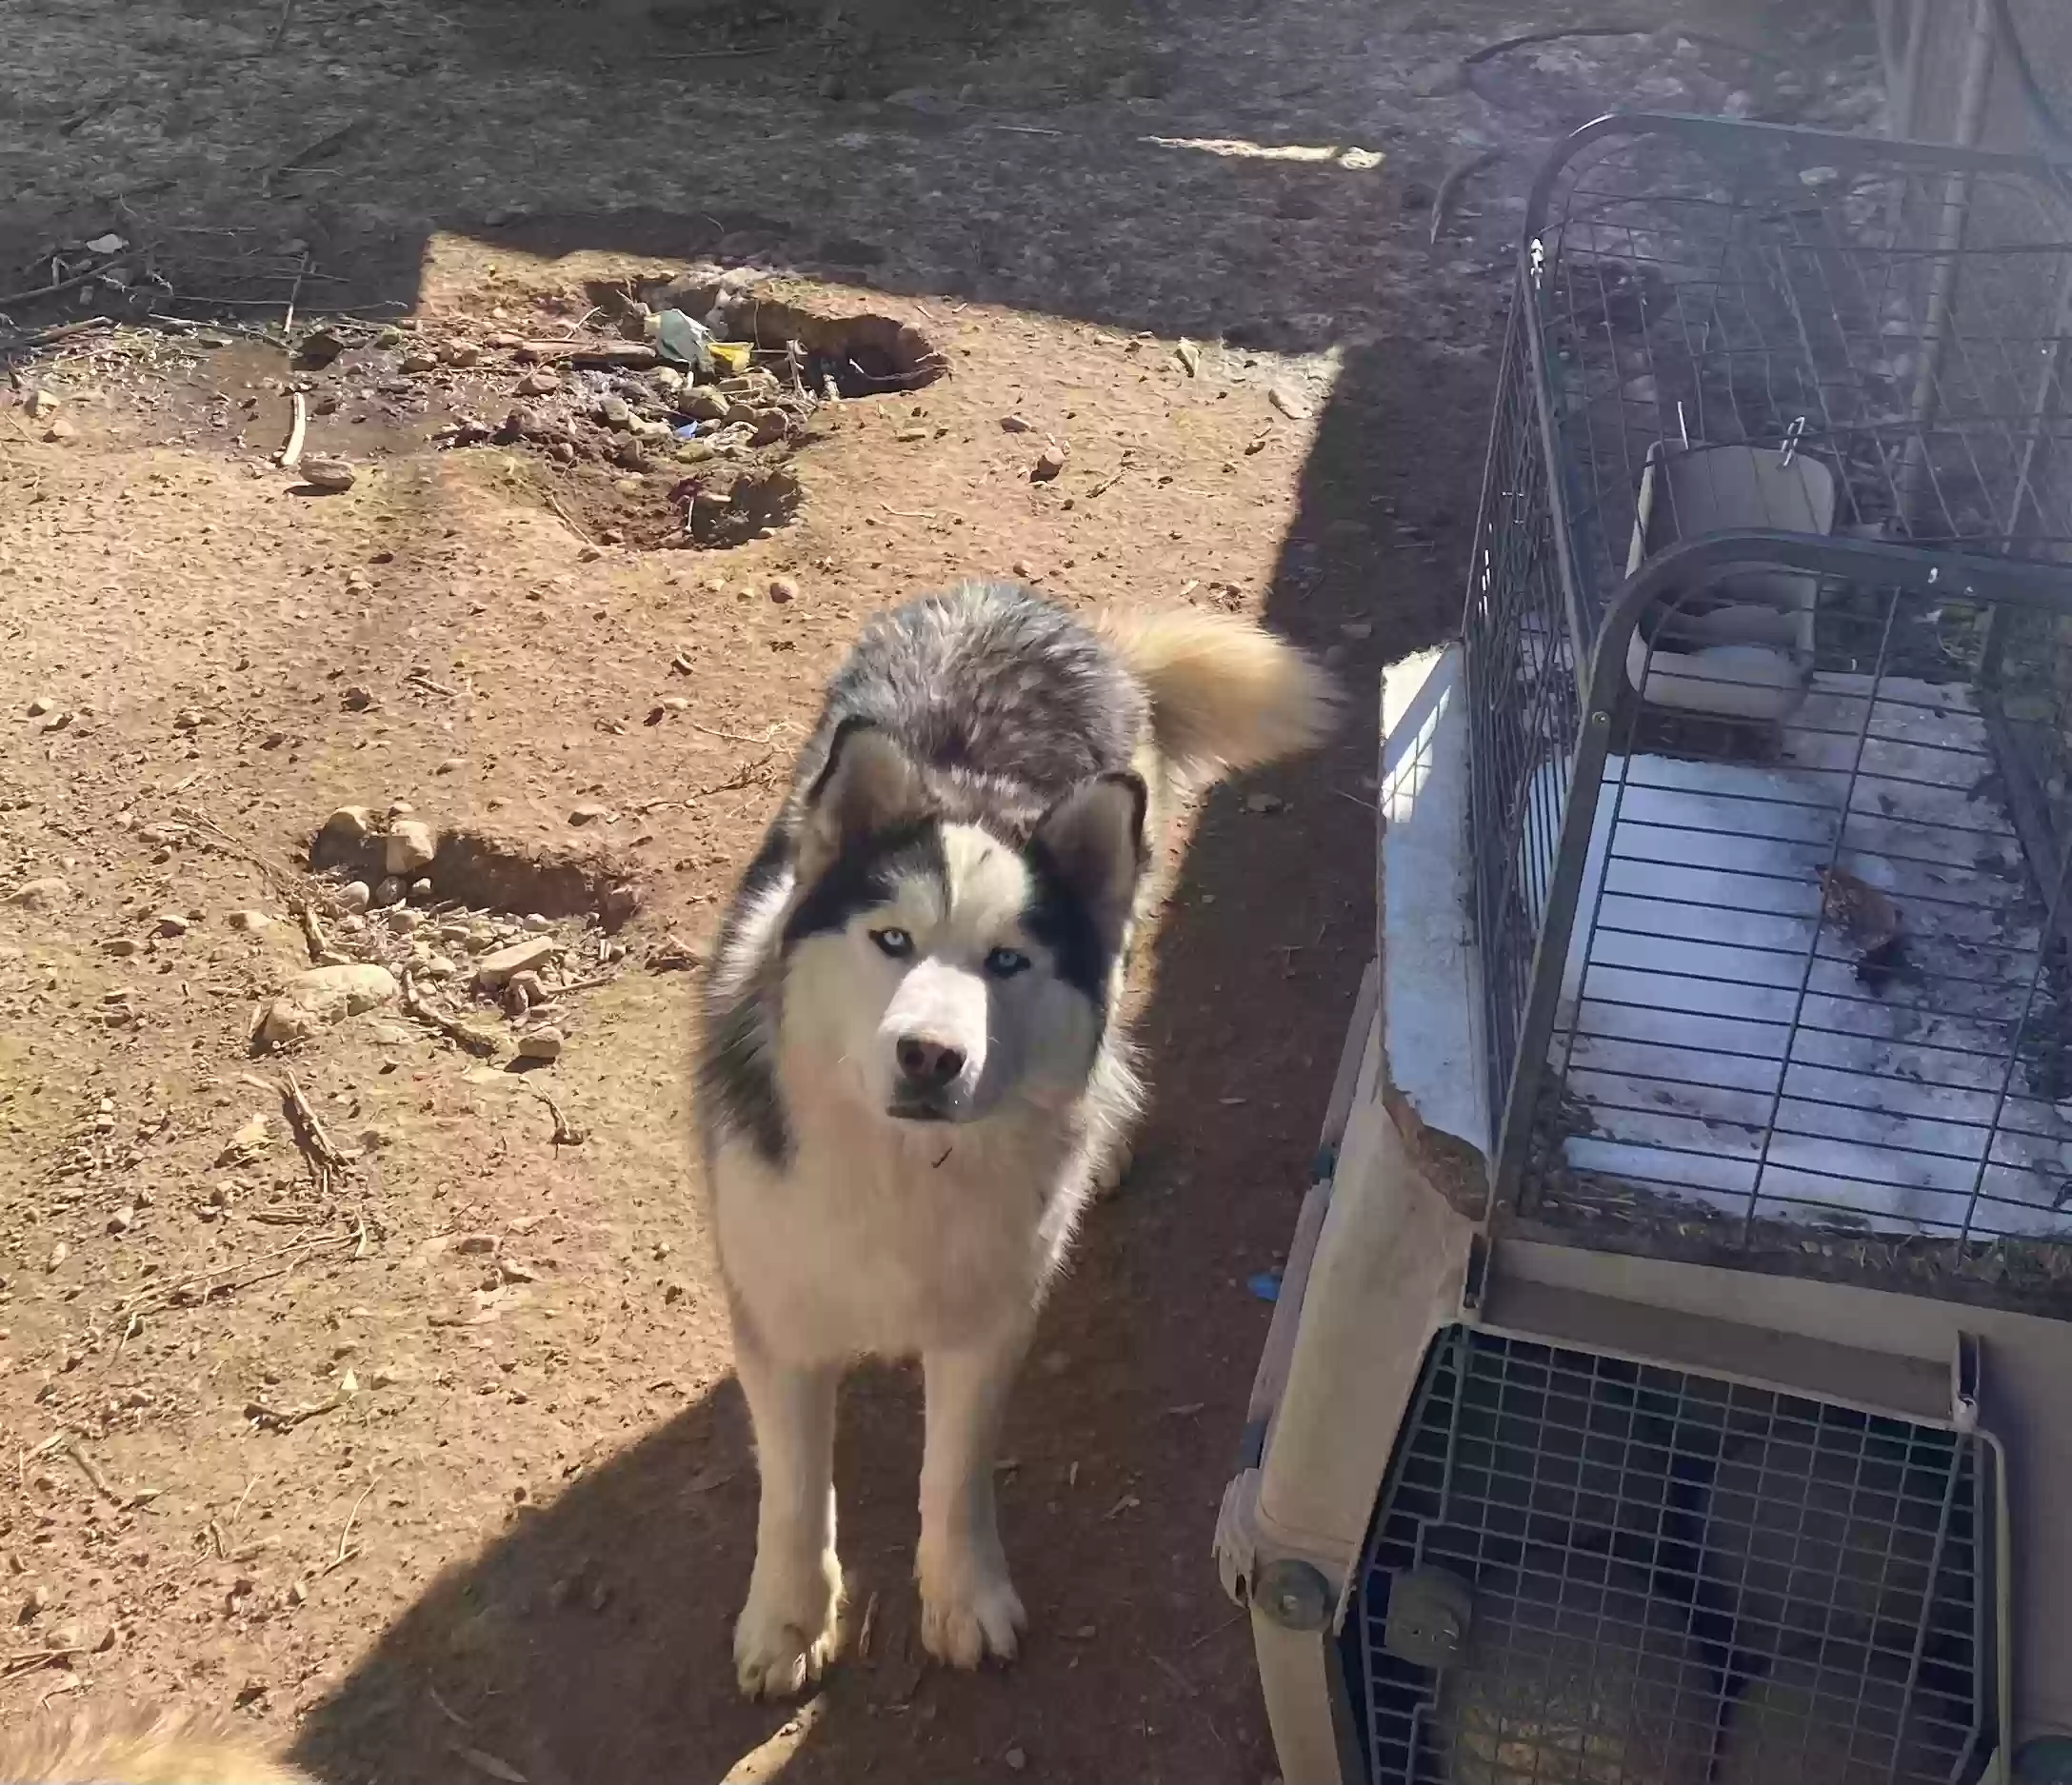 adoptable Dog in Santa Fe,NM named Nico